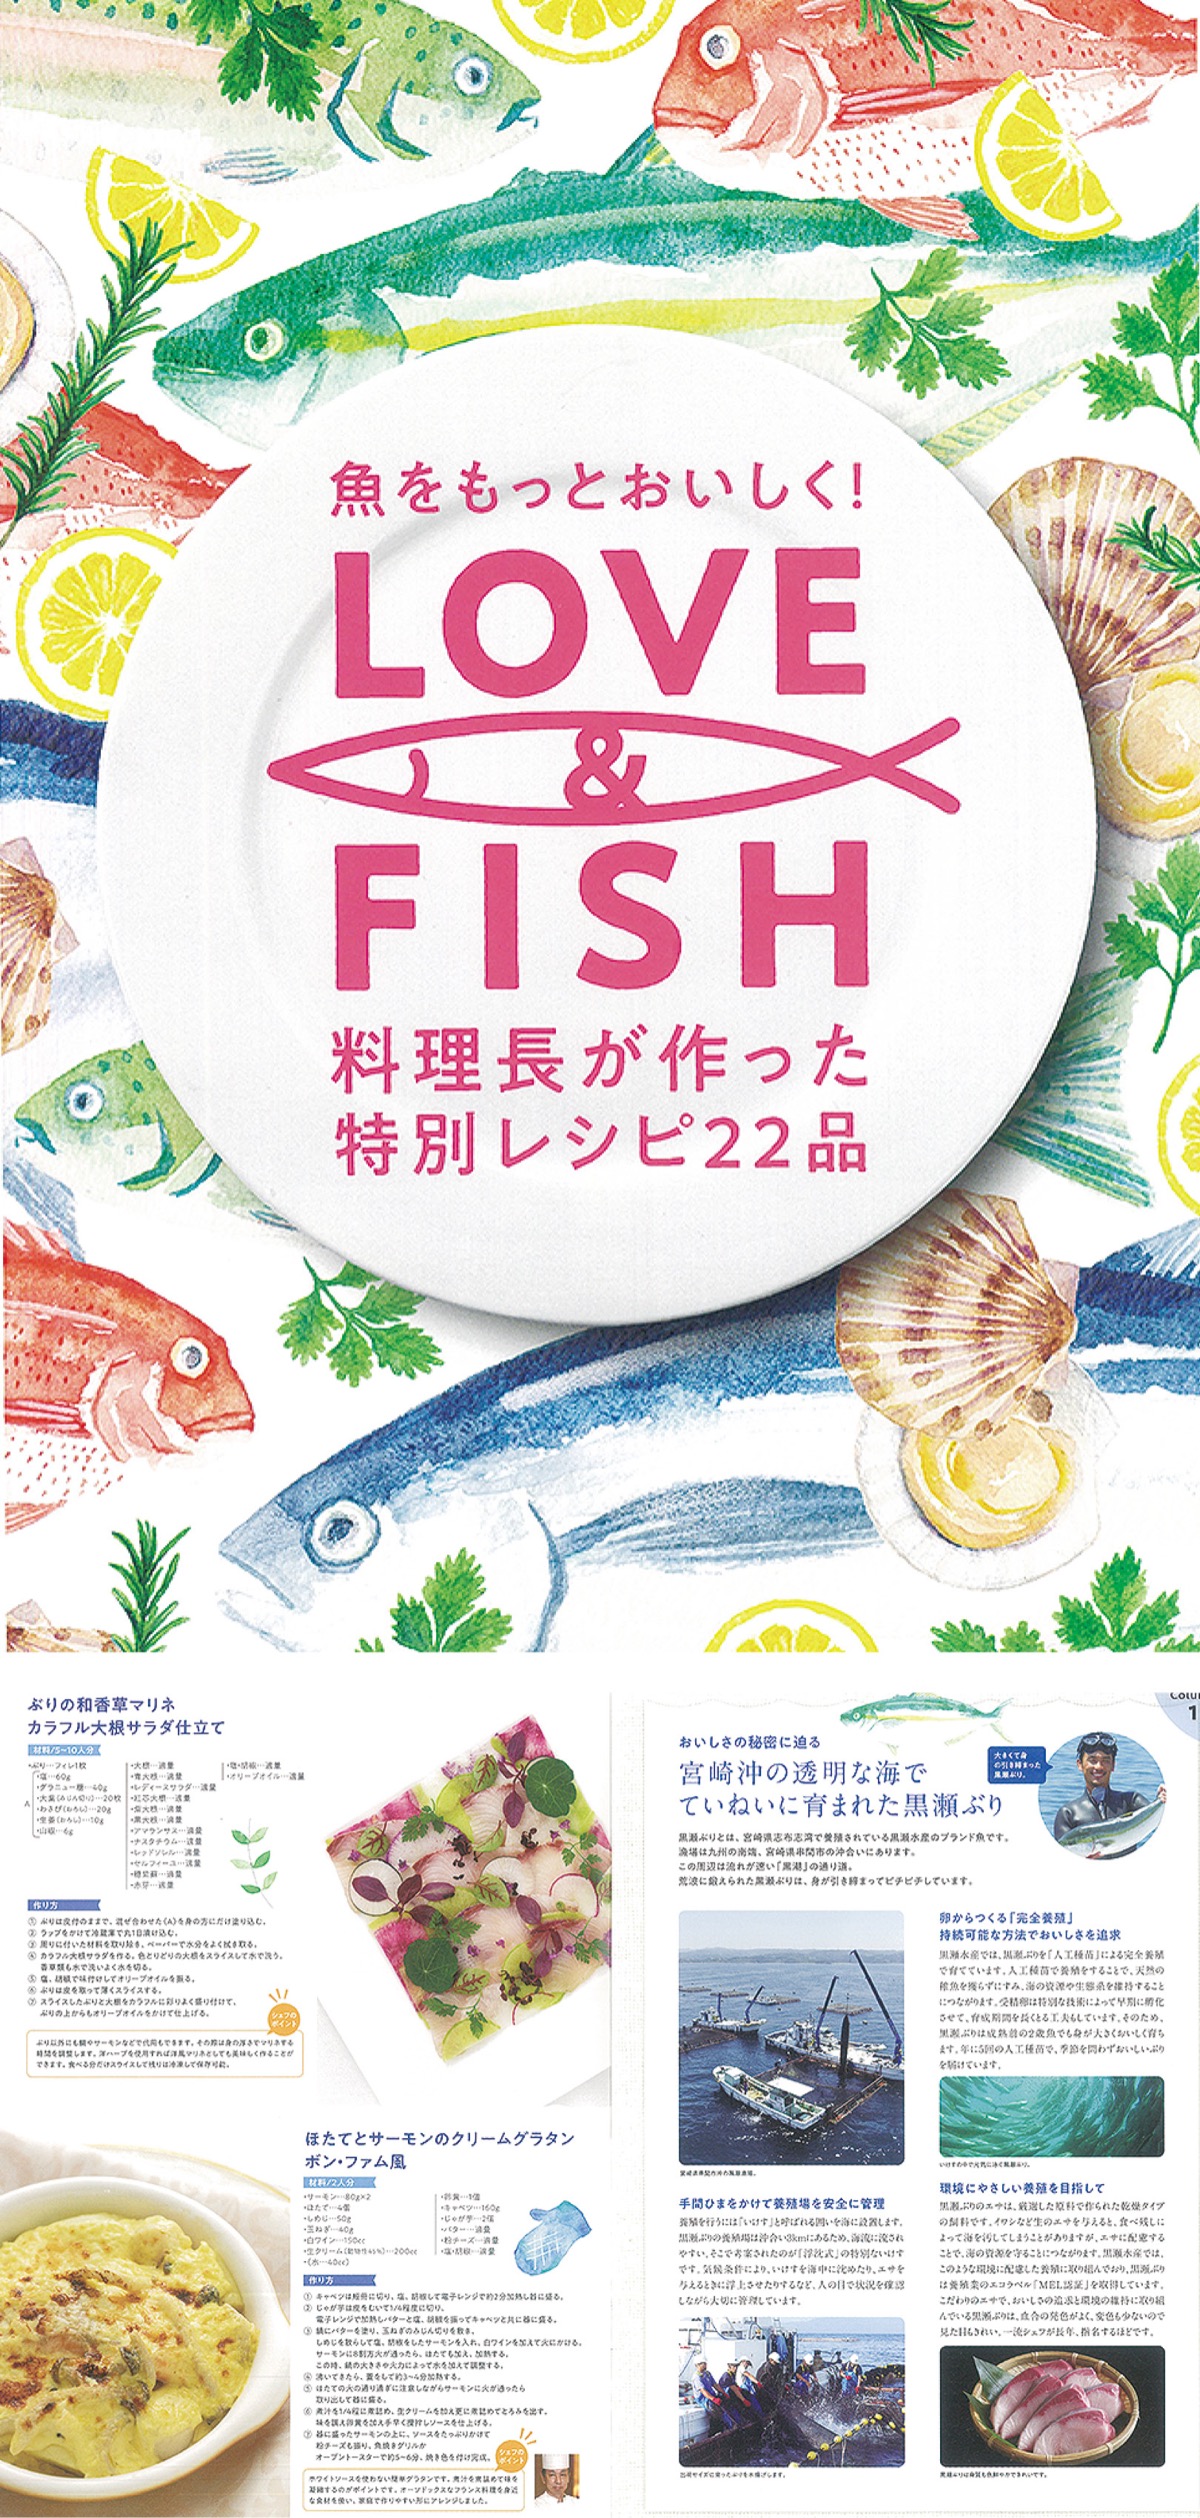 シェフ直伝の魚レシピ